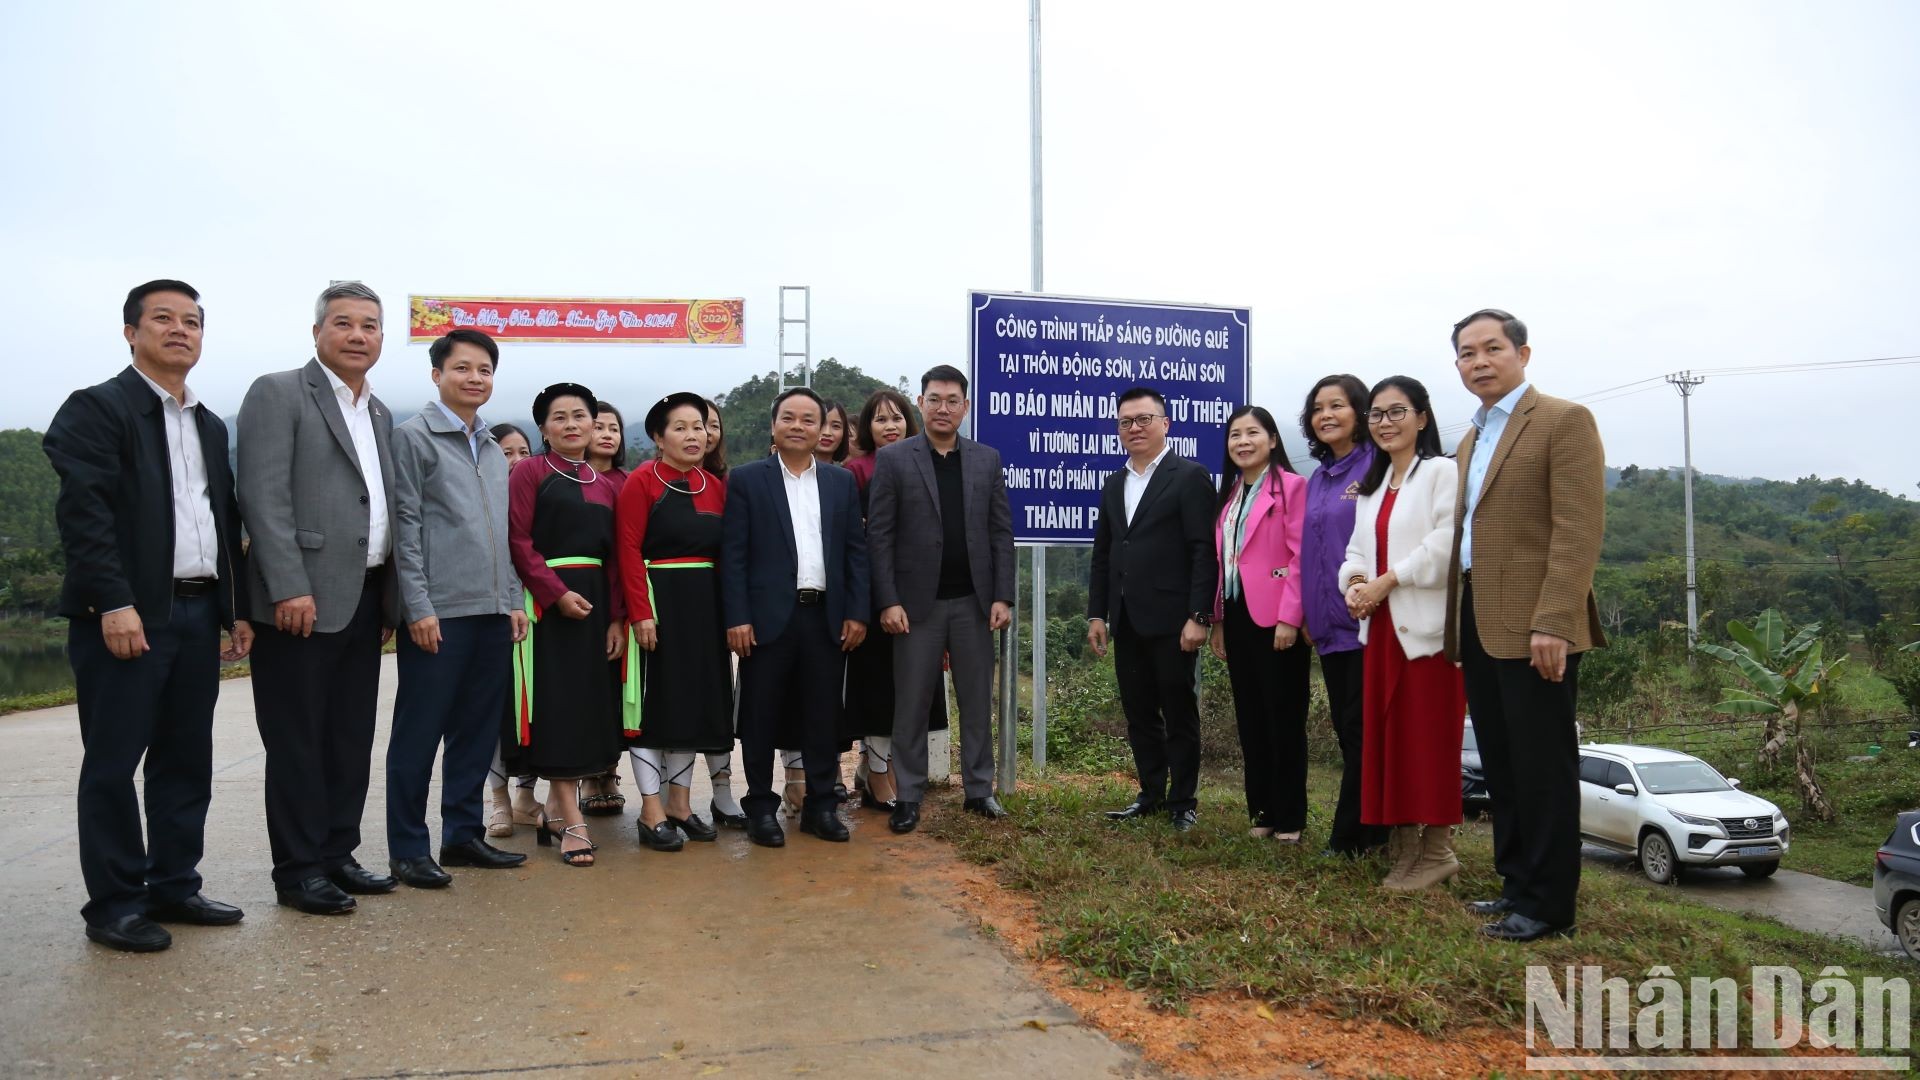 Các đại biểu khánh thành đường điện thắp sáng tại thôn Động Sơn, xã Chân Sơn, huyện Yên Sơn, tỉnh Tuyên Quang.